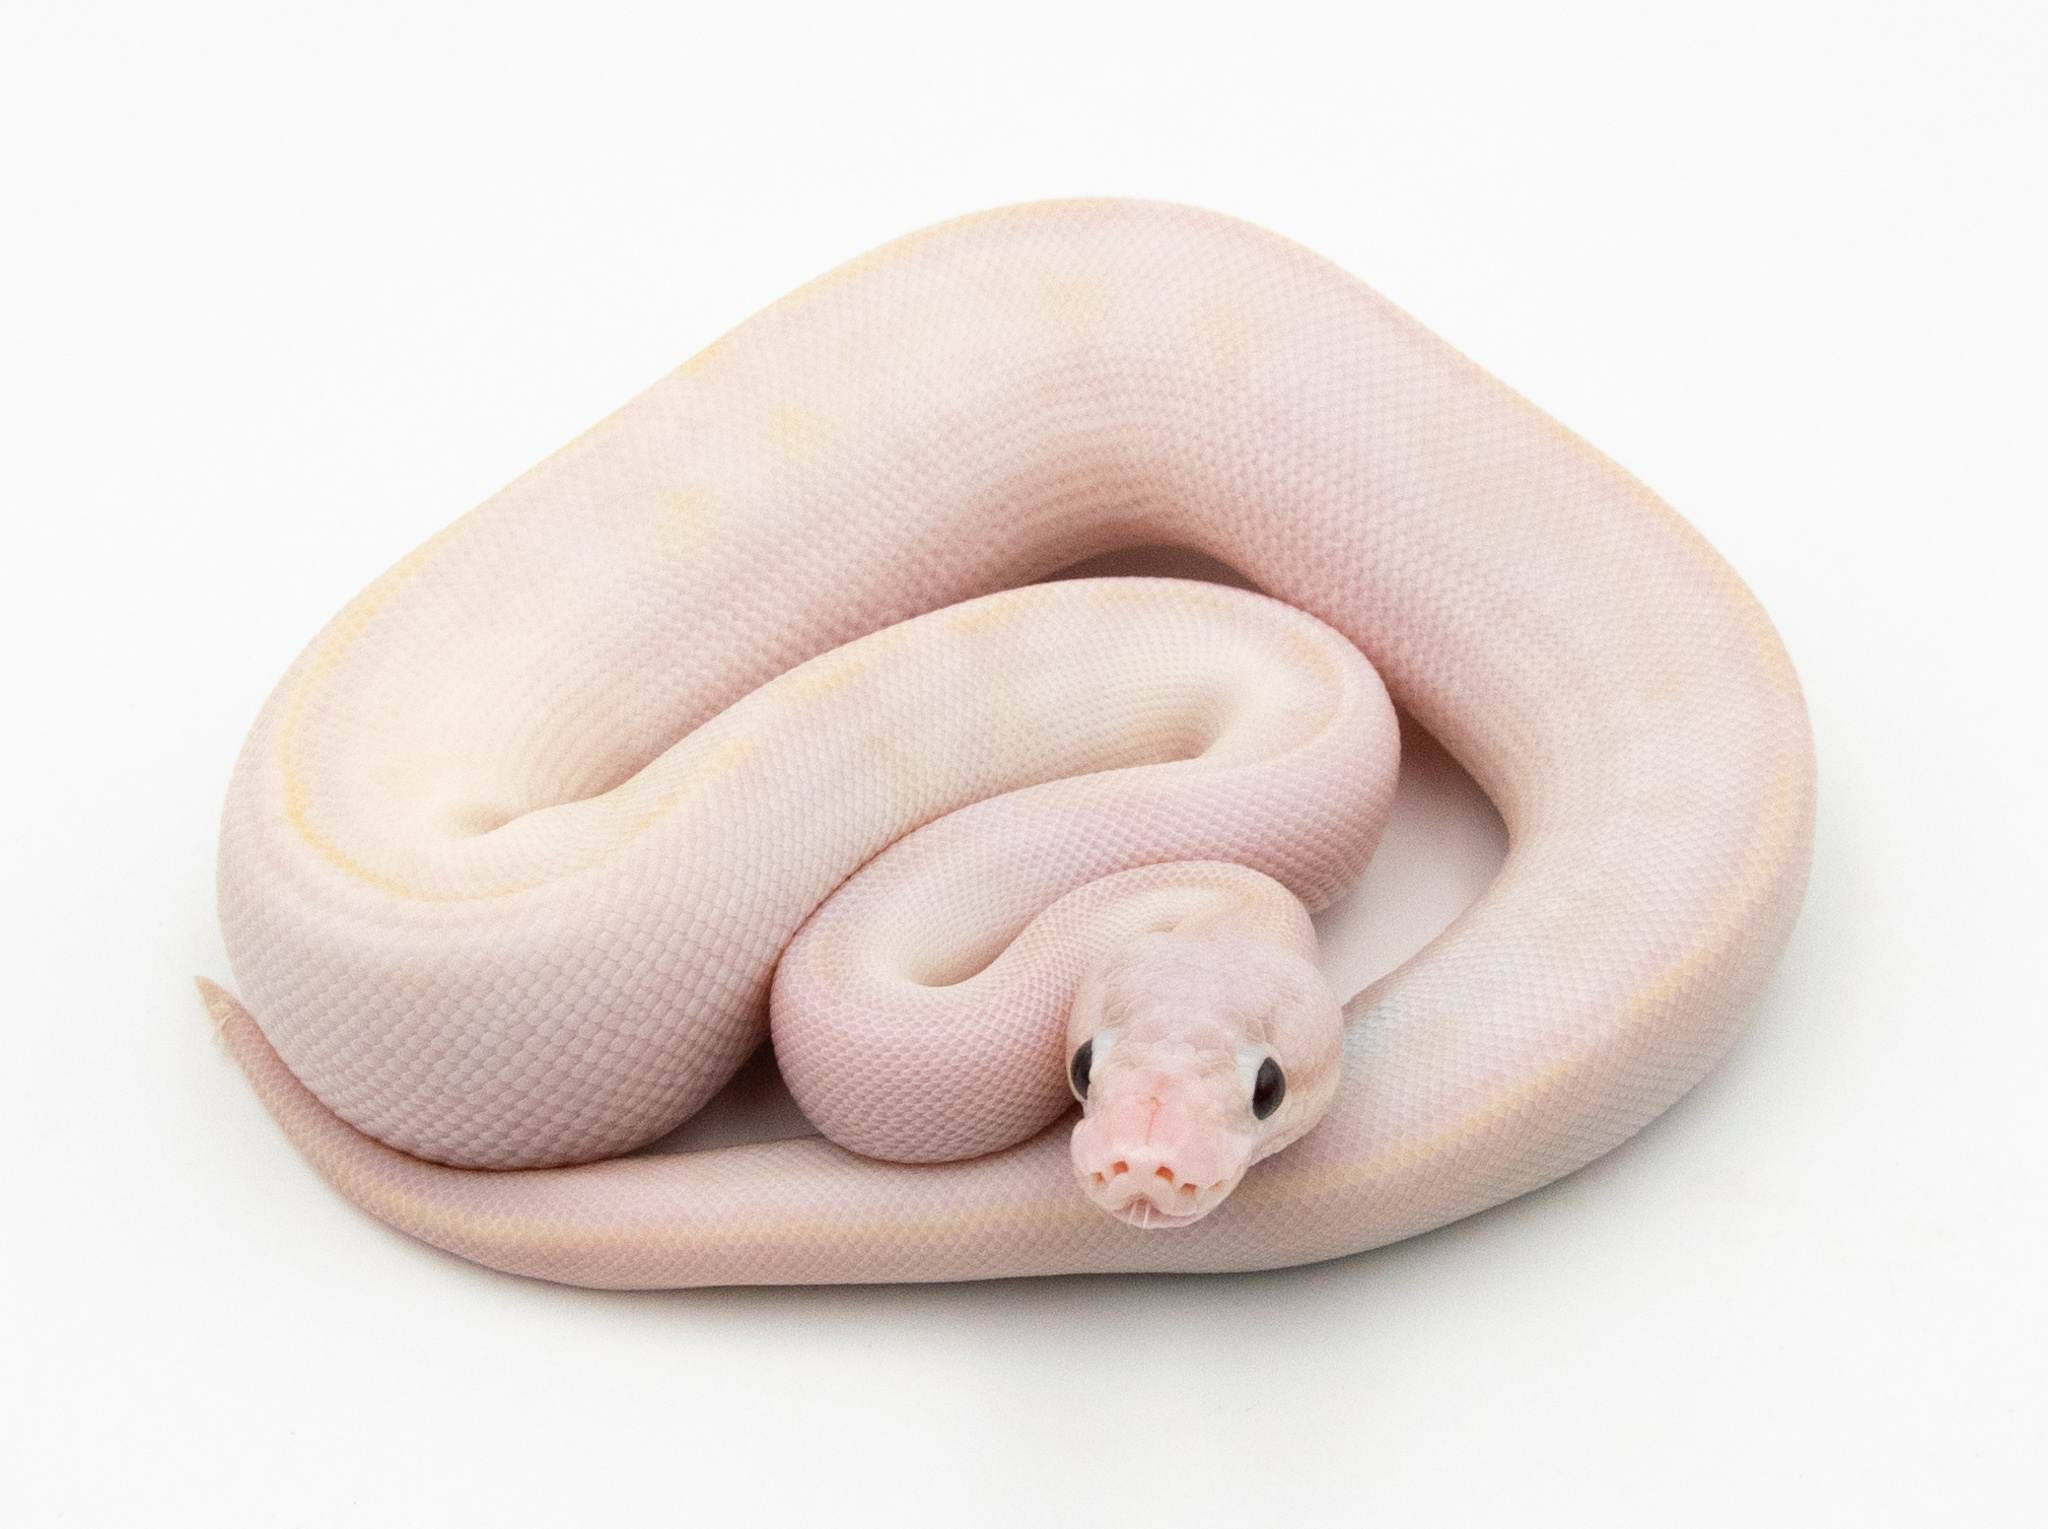 Python Royal - Python regius Ivory Pastel poss Banana